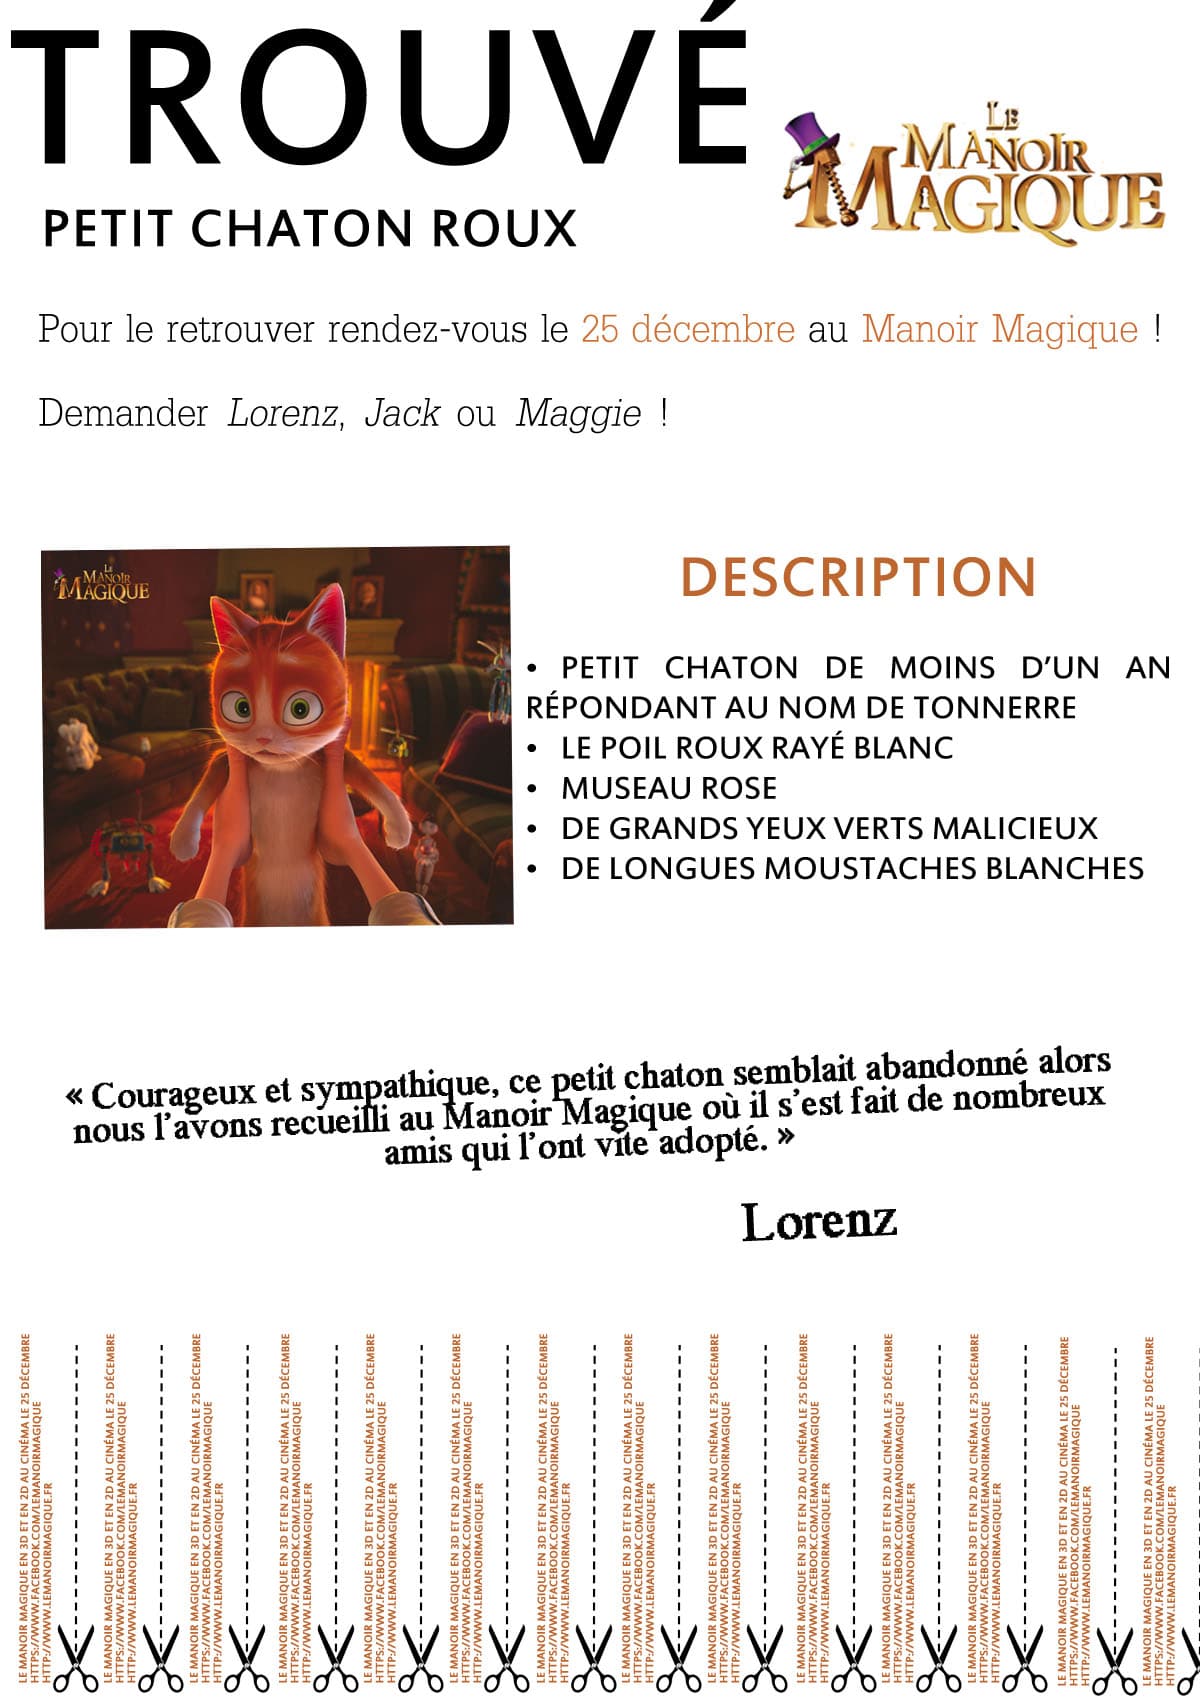 Le-Manoir-Magique-Annonce-01  